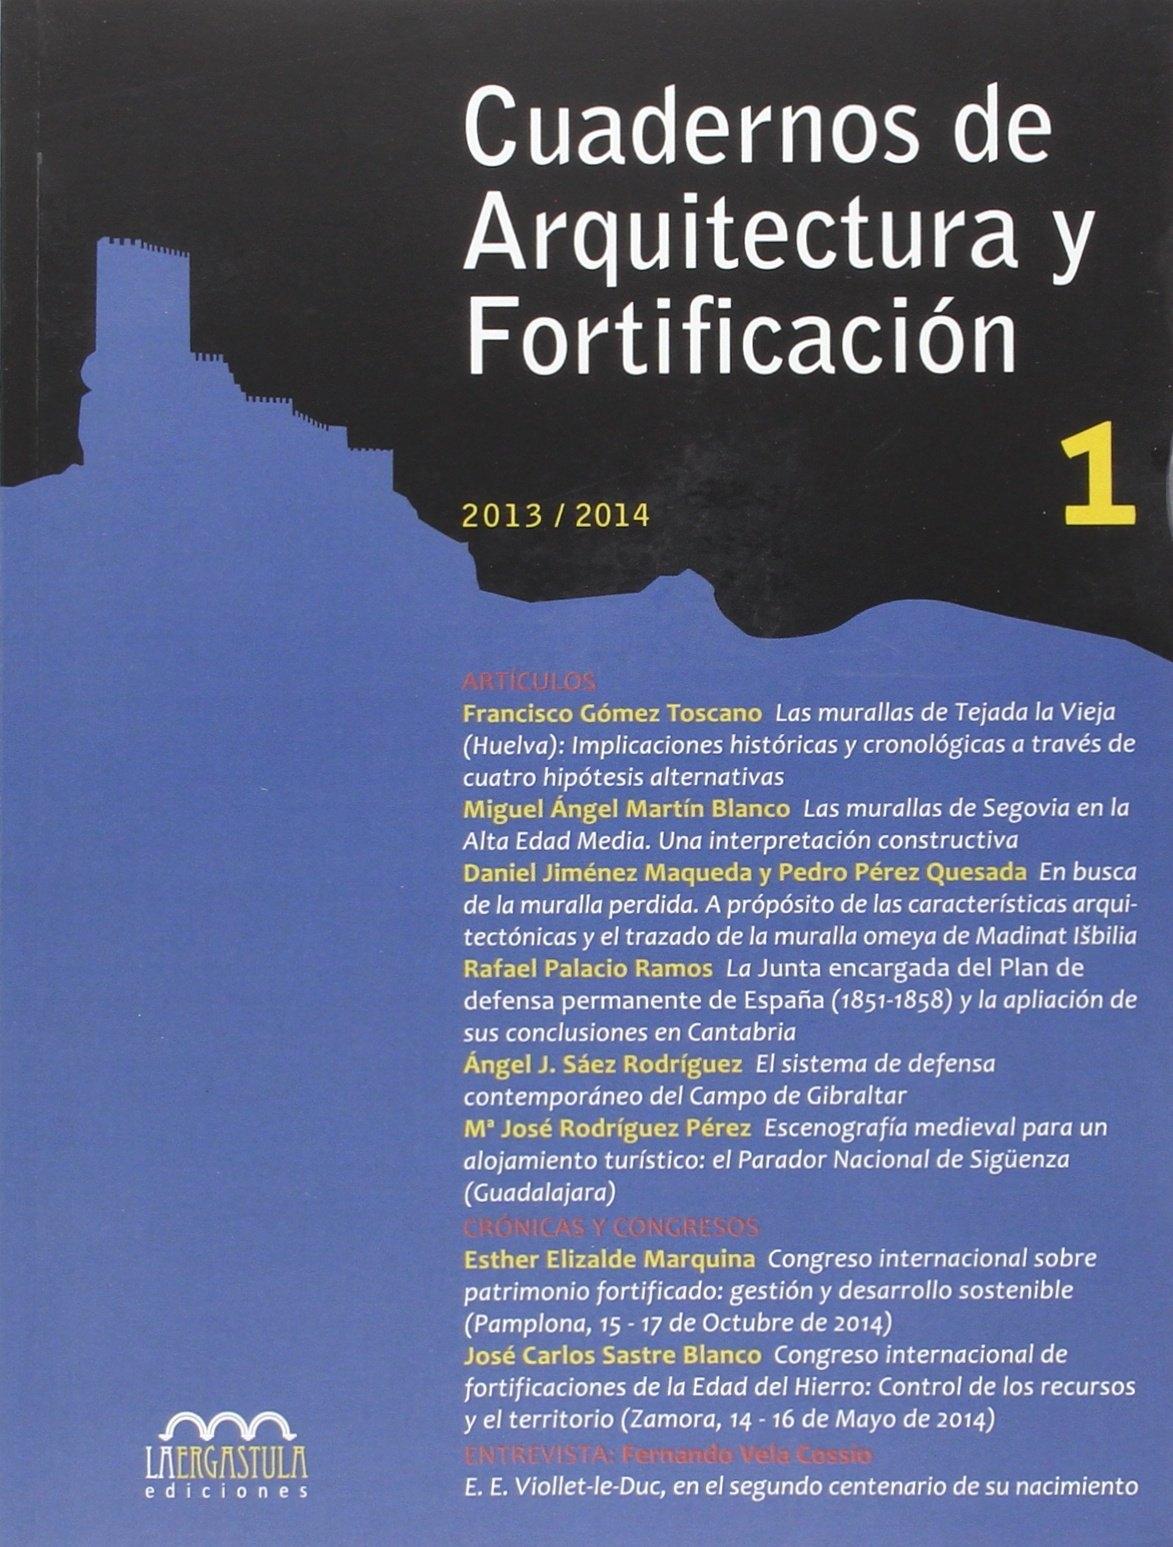 CUADERNOS DE ARQUITECTURA Y FORTIFICACIÓN, NÚMERO 1 "2013-2014"